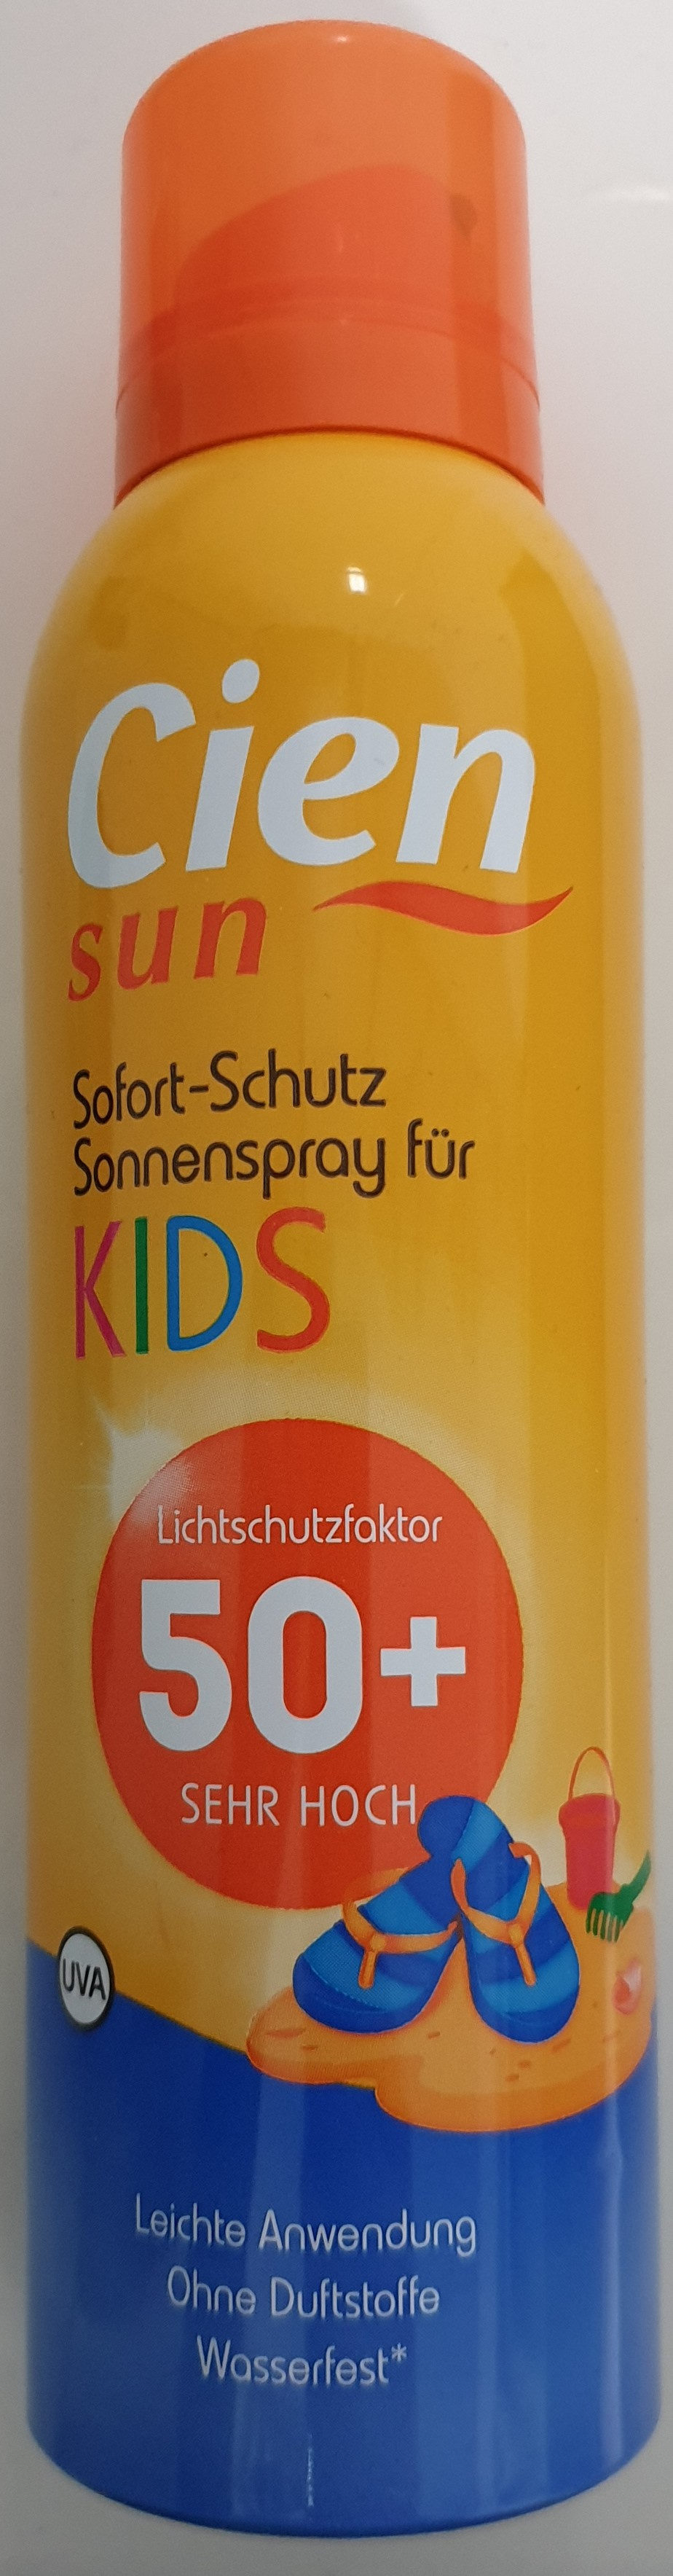 Sofort-Schutz Sonnenspray für Kids 50+ - Продукт - de